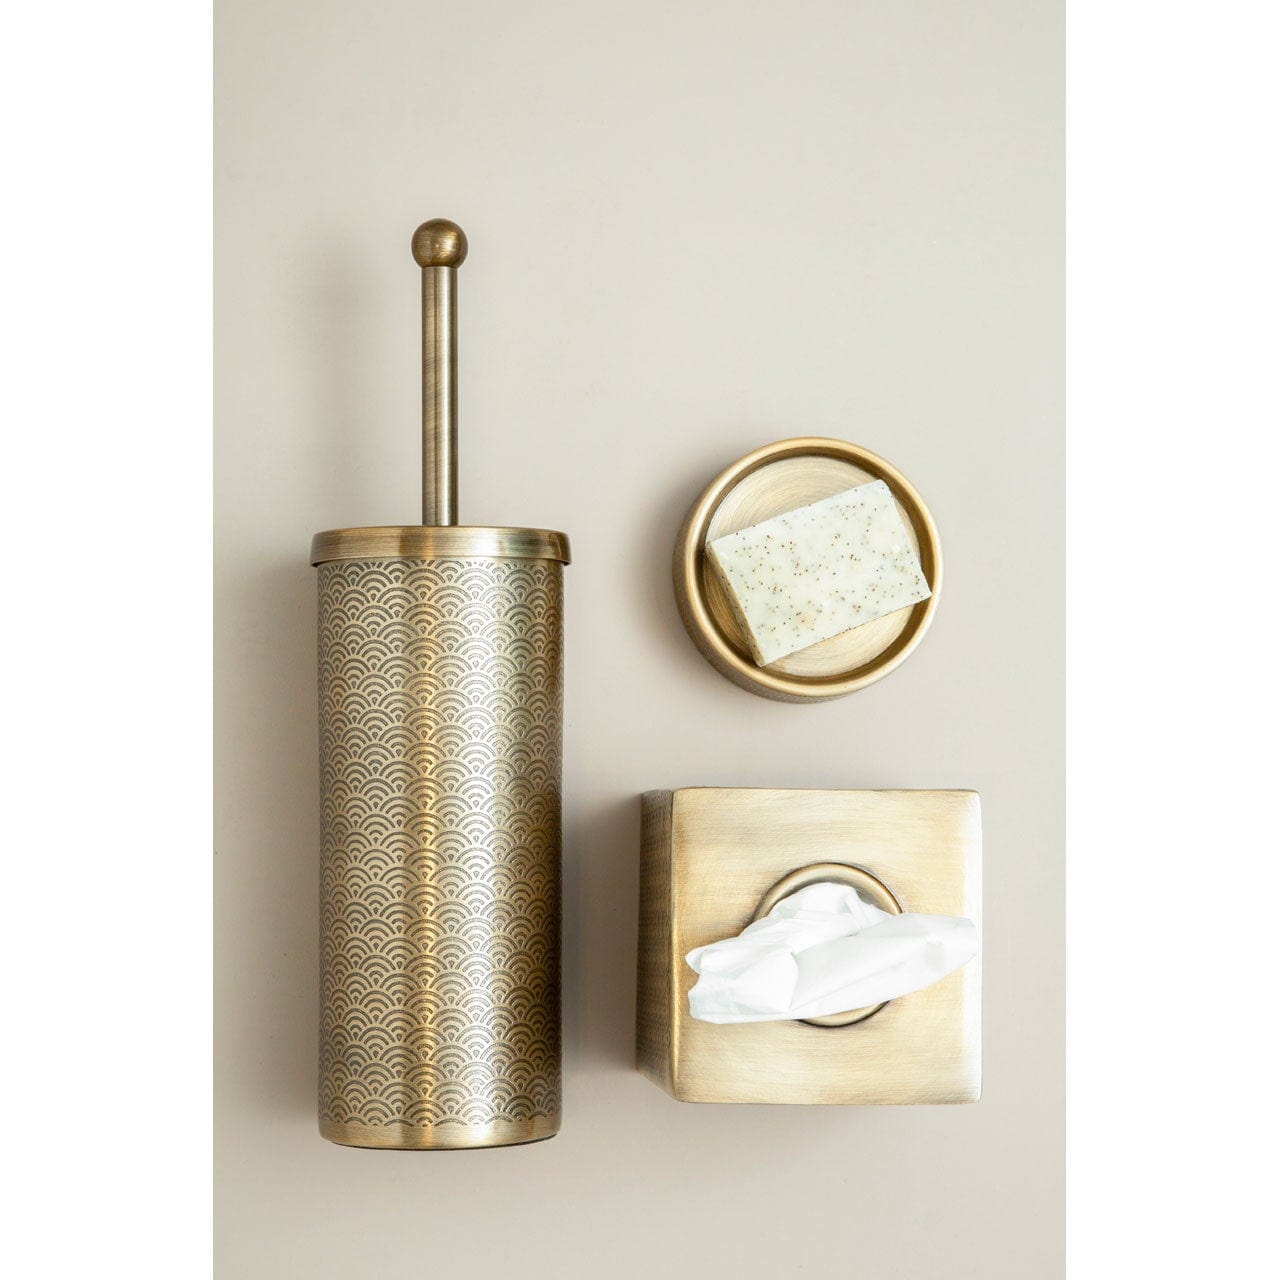 Hamilton Interiors Accessories Allure Gold Finish Aluminium Tissue Box House of Isabella UK